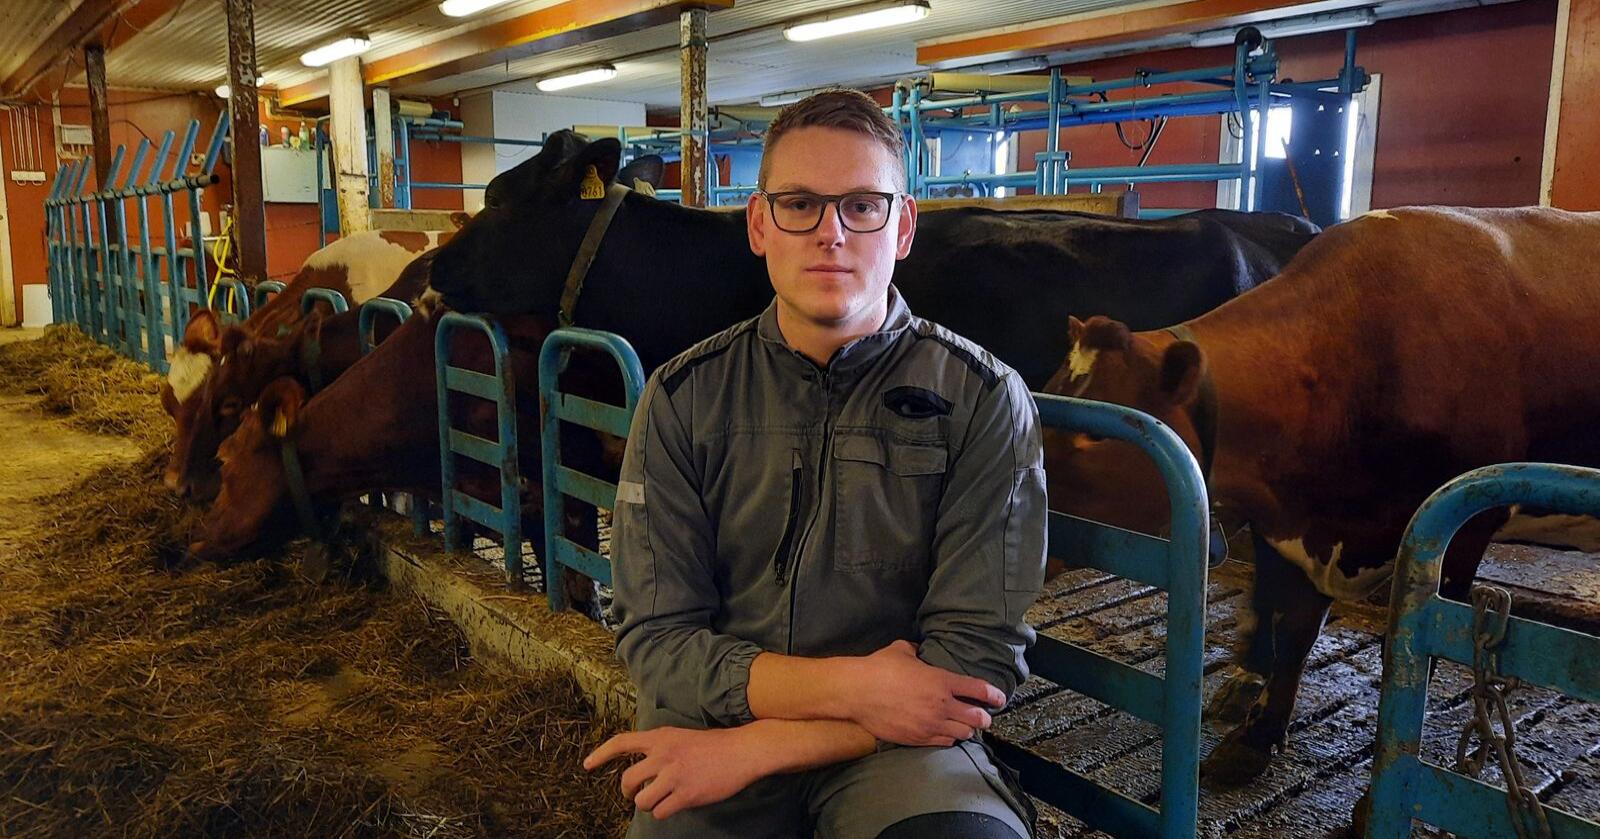 Sentralstyremedlem i Senterungdommen, Steffen Fjellestad, mener forslaget om å splitte opp Tine er en trussel mot et landbruk i hele landet. Foto: Privat